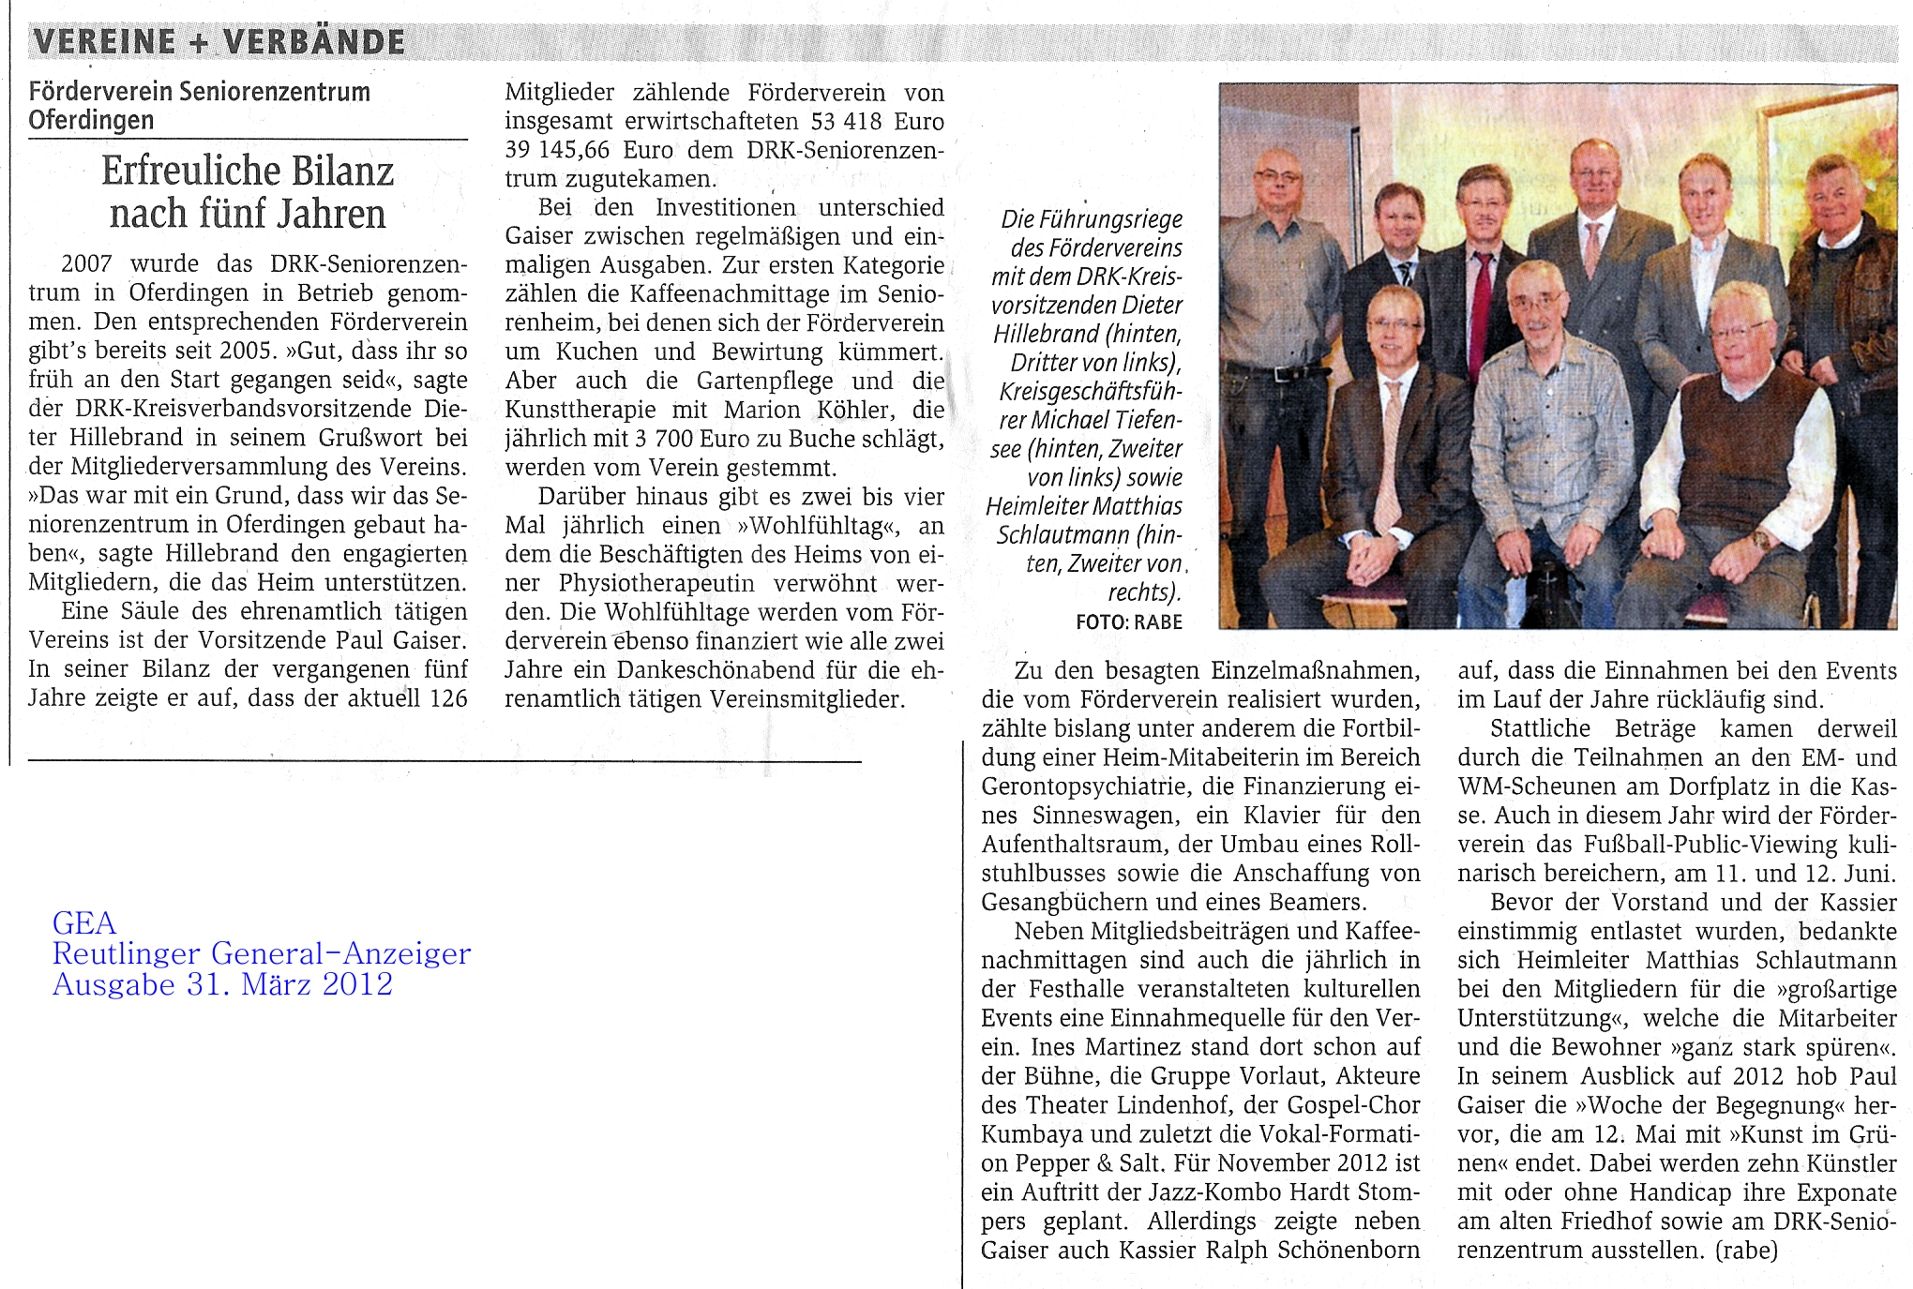 GEA-Artikel über die Mitgliederversammlung 27.03.2012 des Fördervereins Seniorenezentrum Oferdingen e.V.